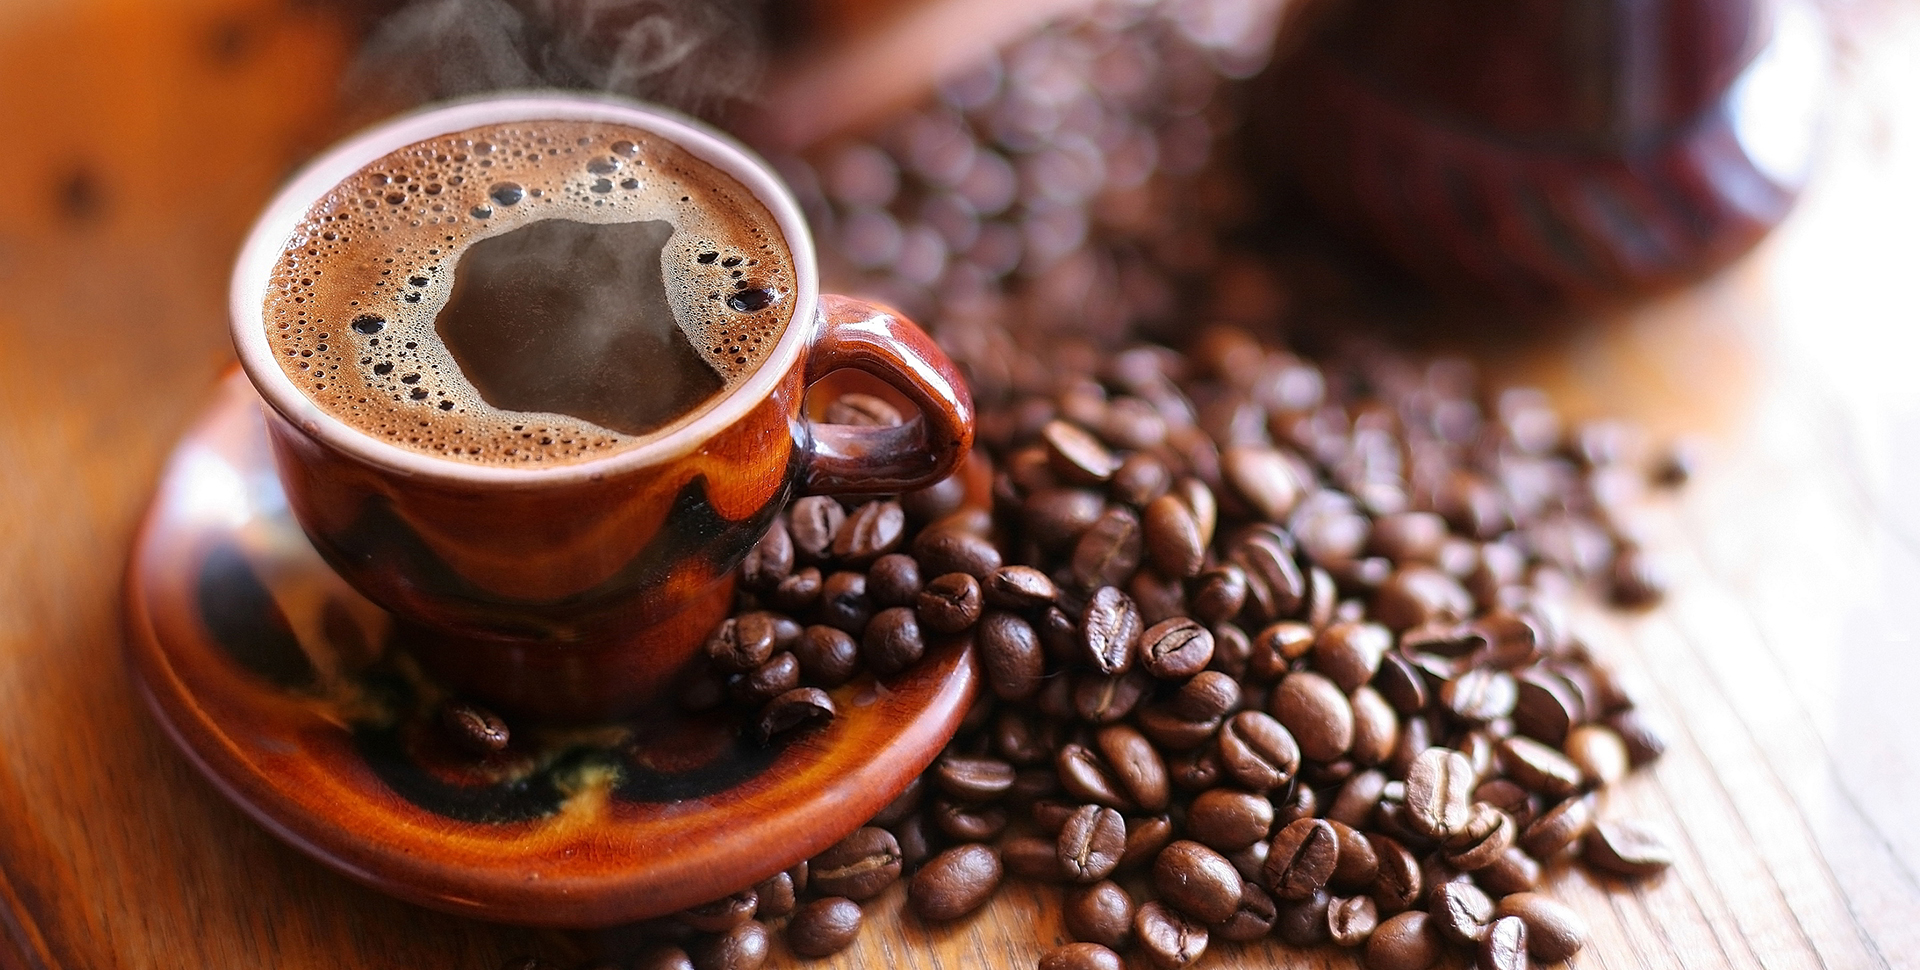 Tỉnh dậy và thưởng thức một ly cà phê, bạn sẽ cảm thấy hạnh phúc hơn đấy!